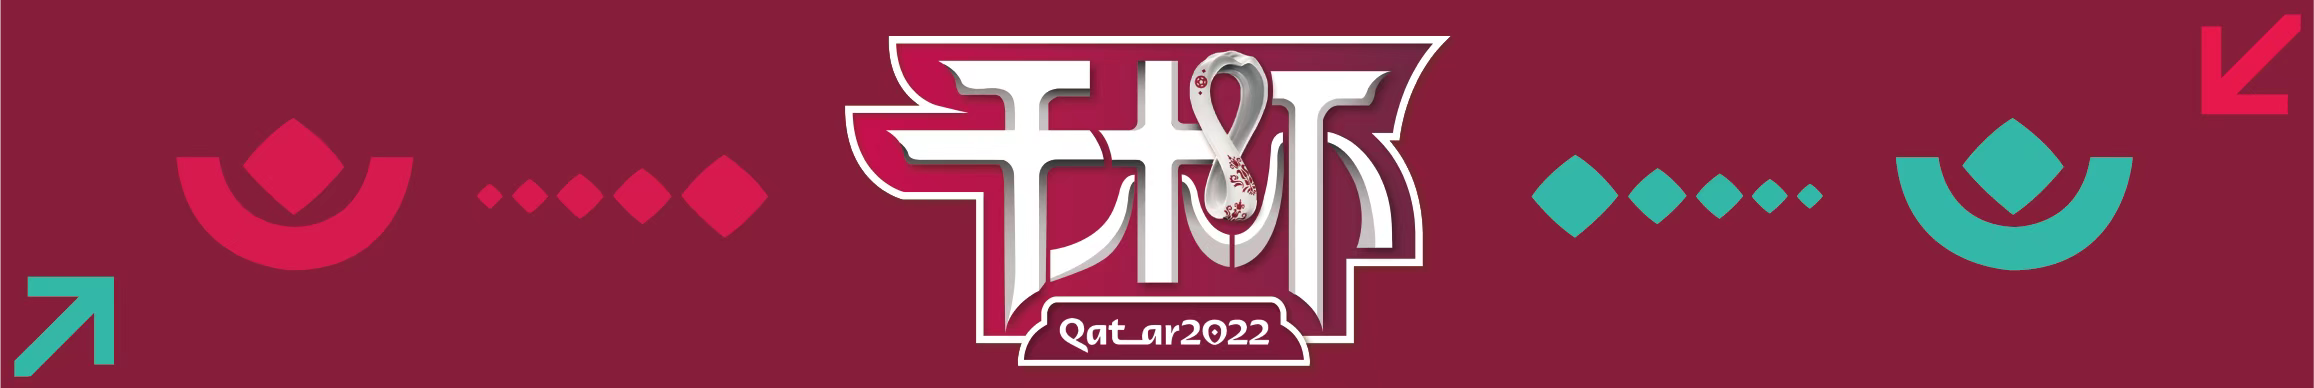 
2022卡塔尔世界杯小组赛结束首轮争夺C罗迎来创造历史一夜